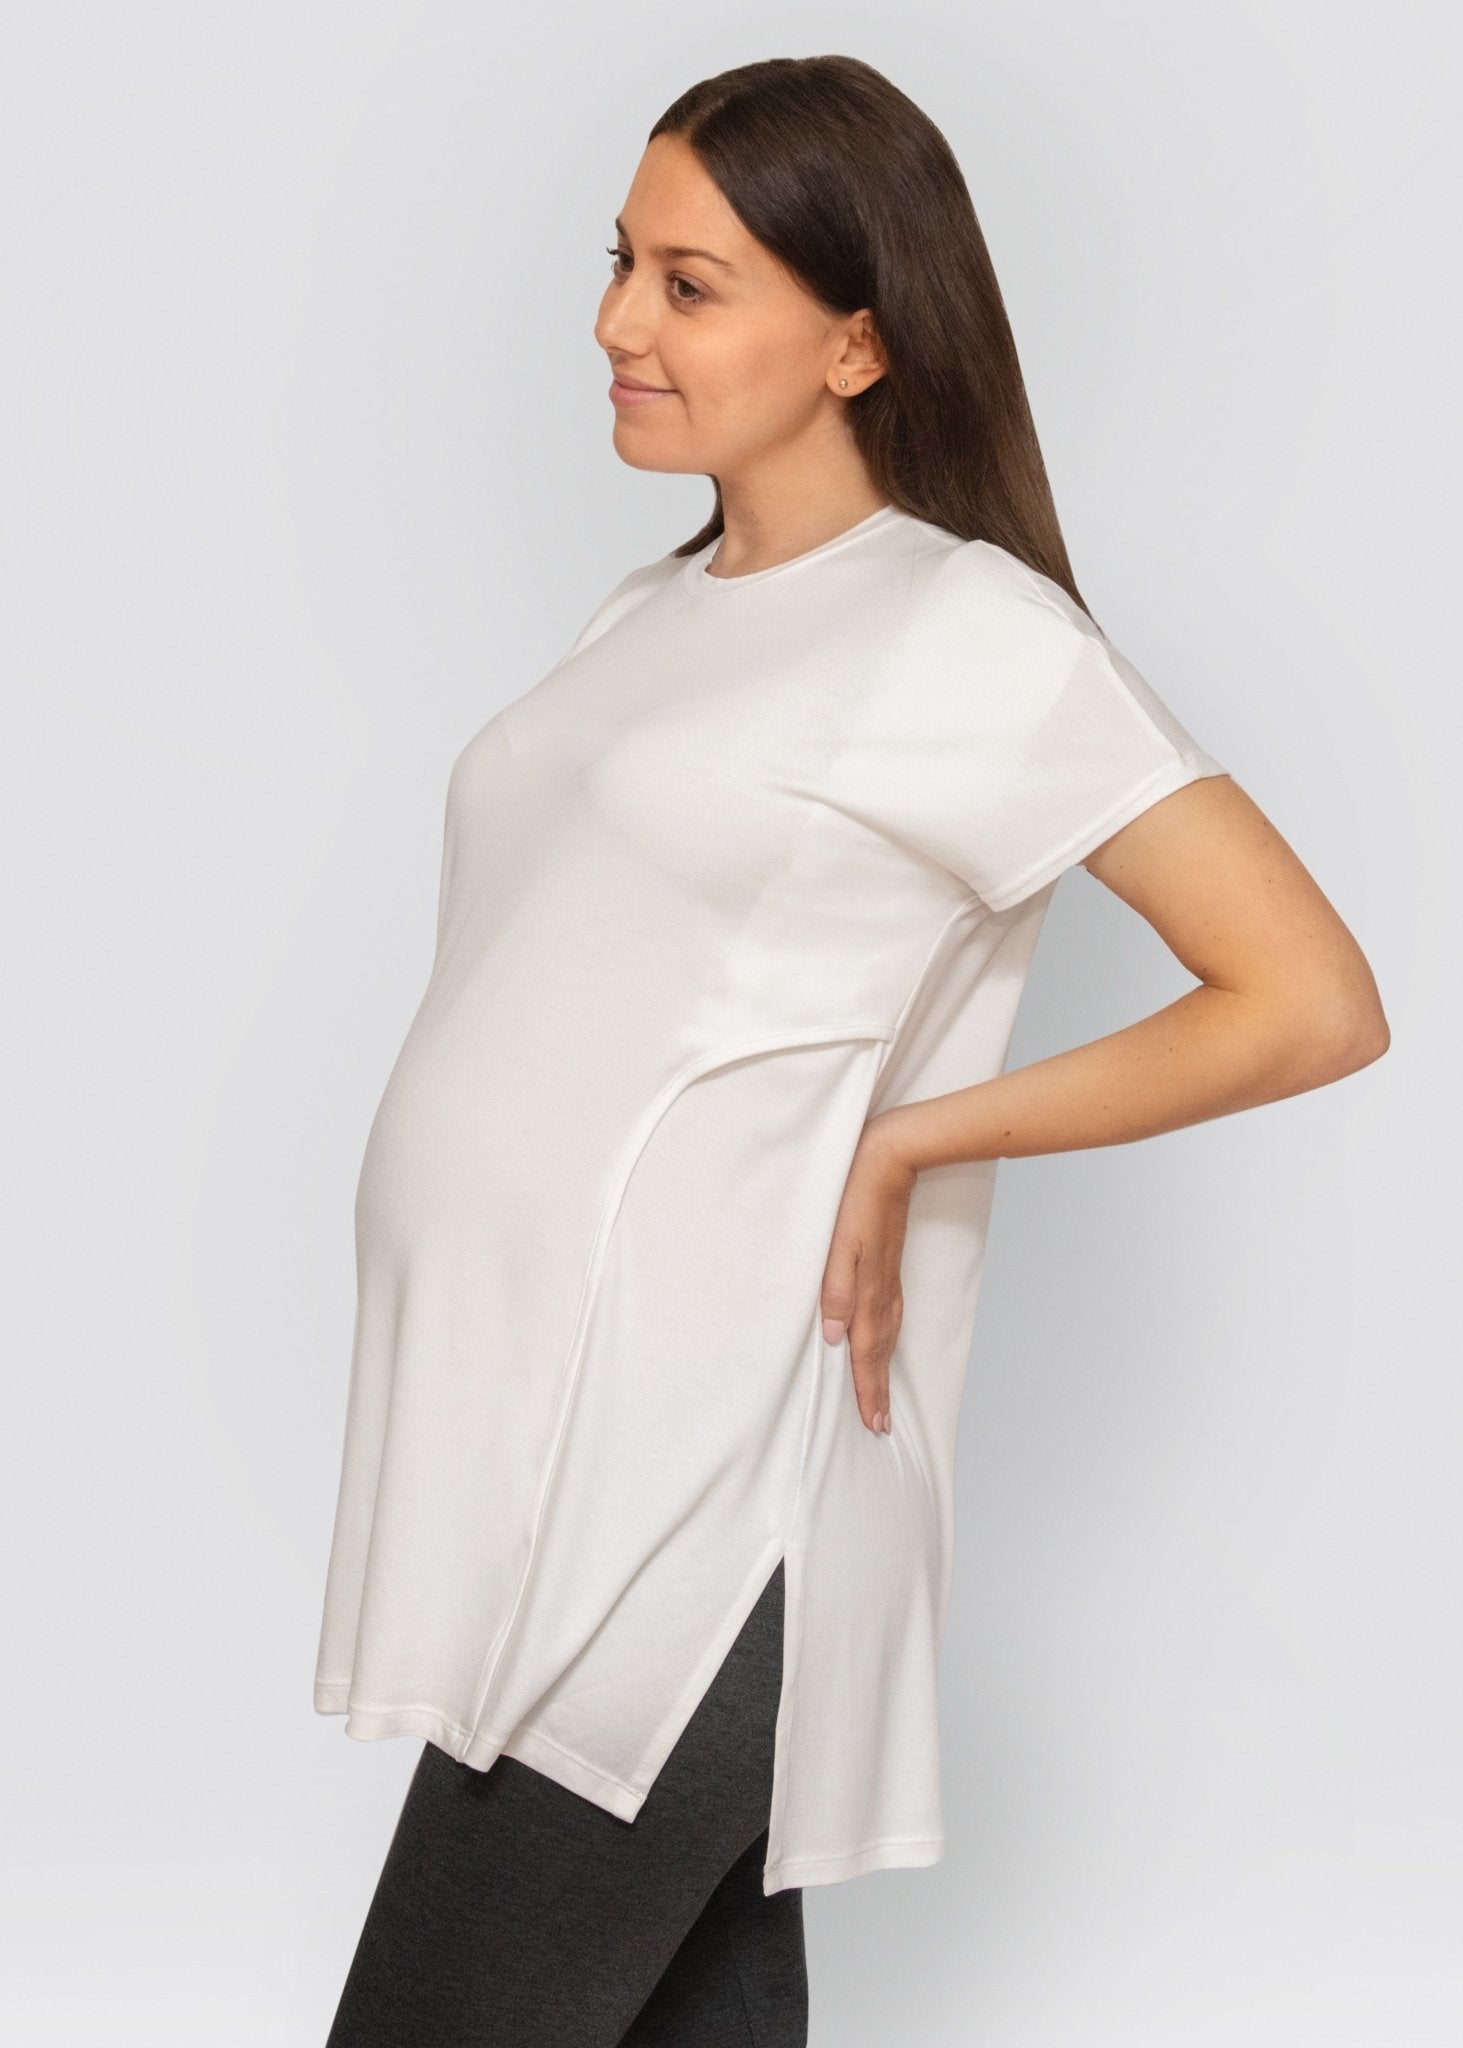 tee - white-Úton Maternity-stride